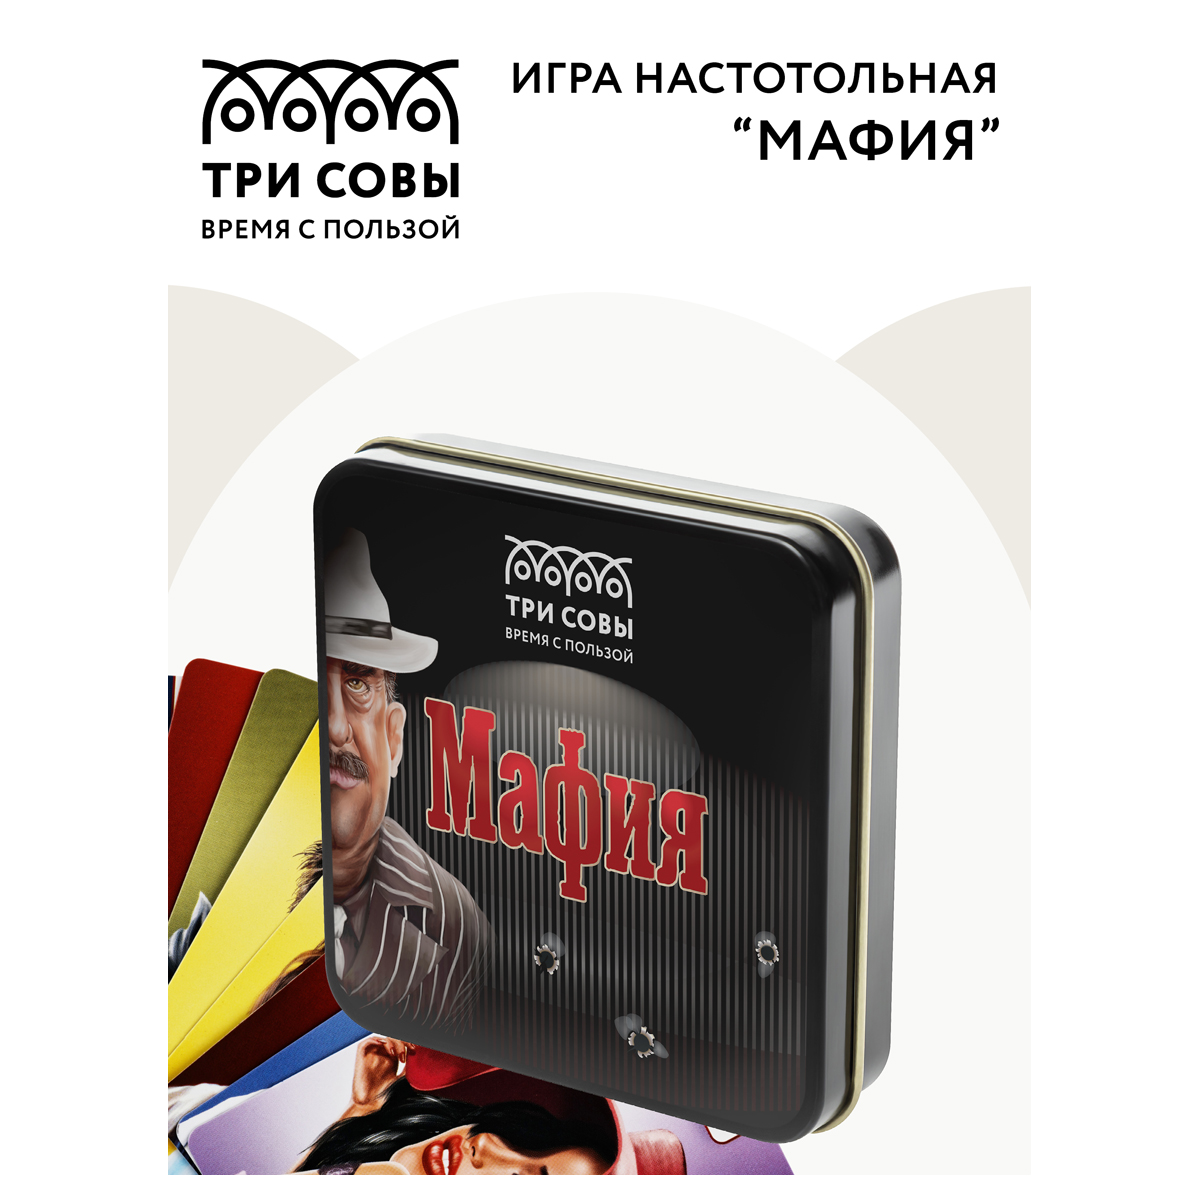 Игра настольная ТРИ СОВЫ "Мафия", 14 карточек, метал. коробка